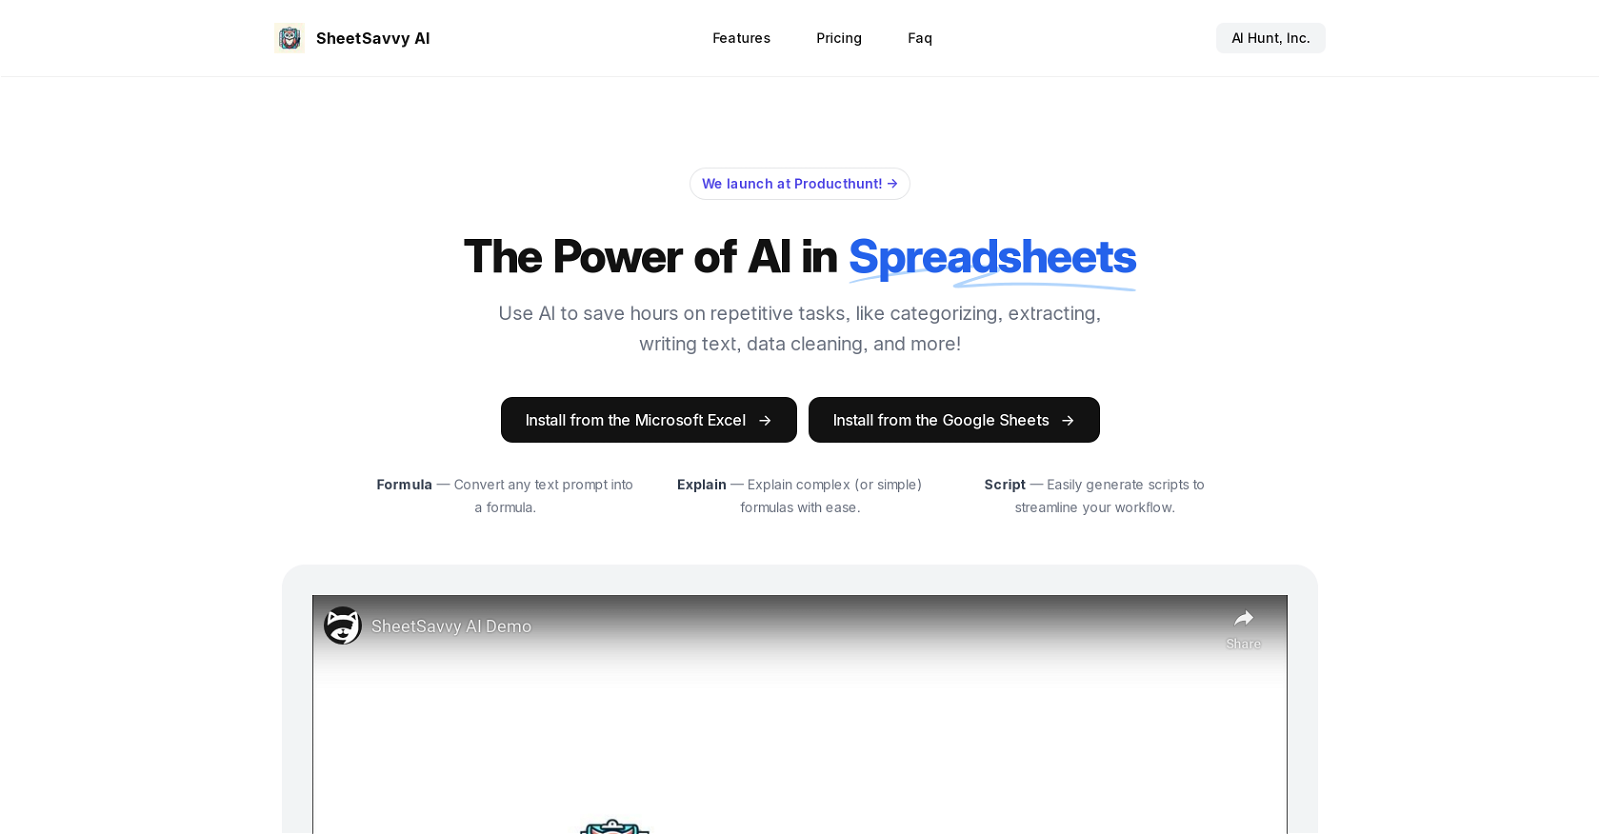 SheetSavvy AI website